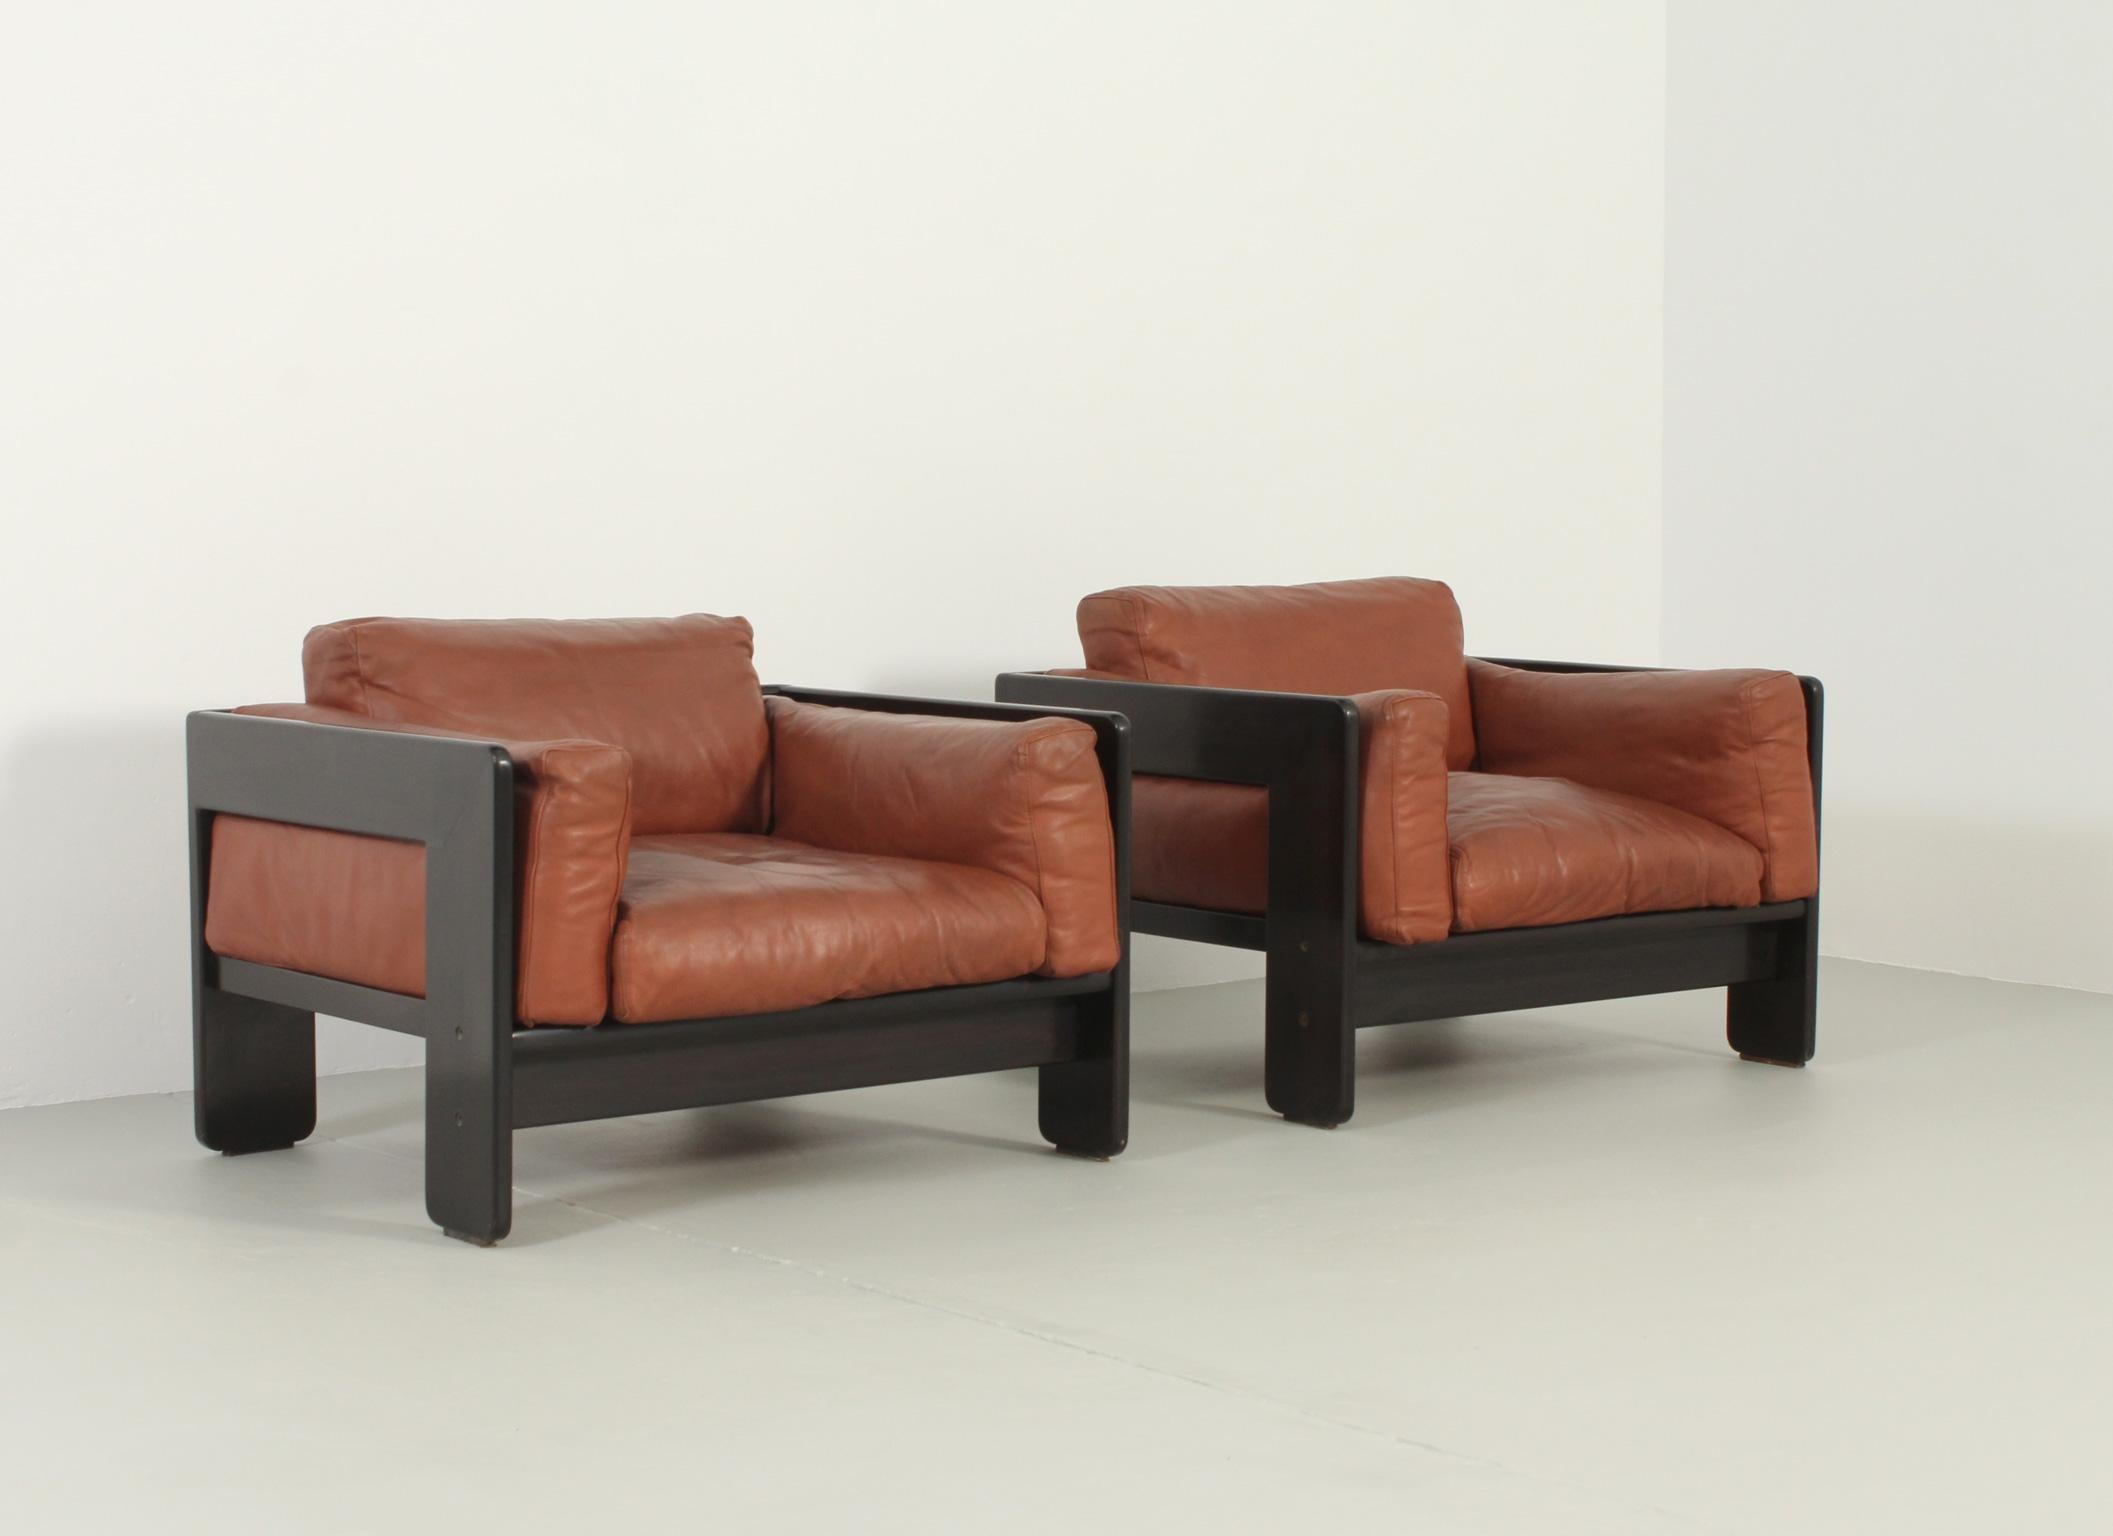 Paire de fauteuils Bastiano conçus en 1960 par Tobia Scarpa pour Gavina, Italie. Structure en bois d'acajou et coussins en cuir originaux amovibles. Édition originale signée par Gavina-MYC Espagne avec un très beau cuir résistant.